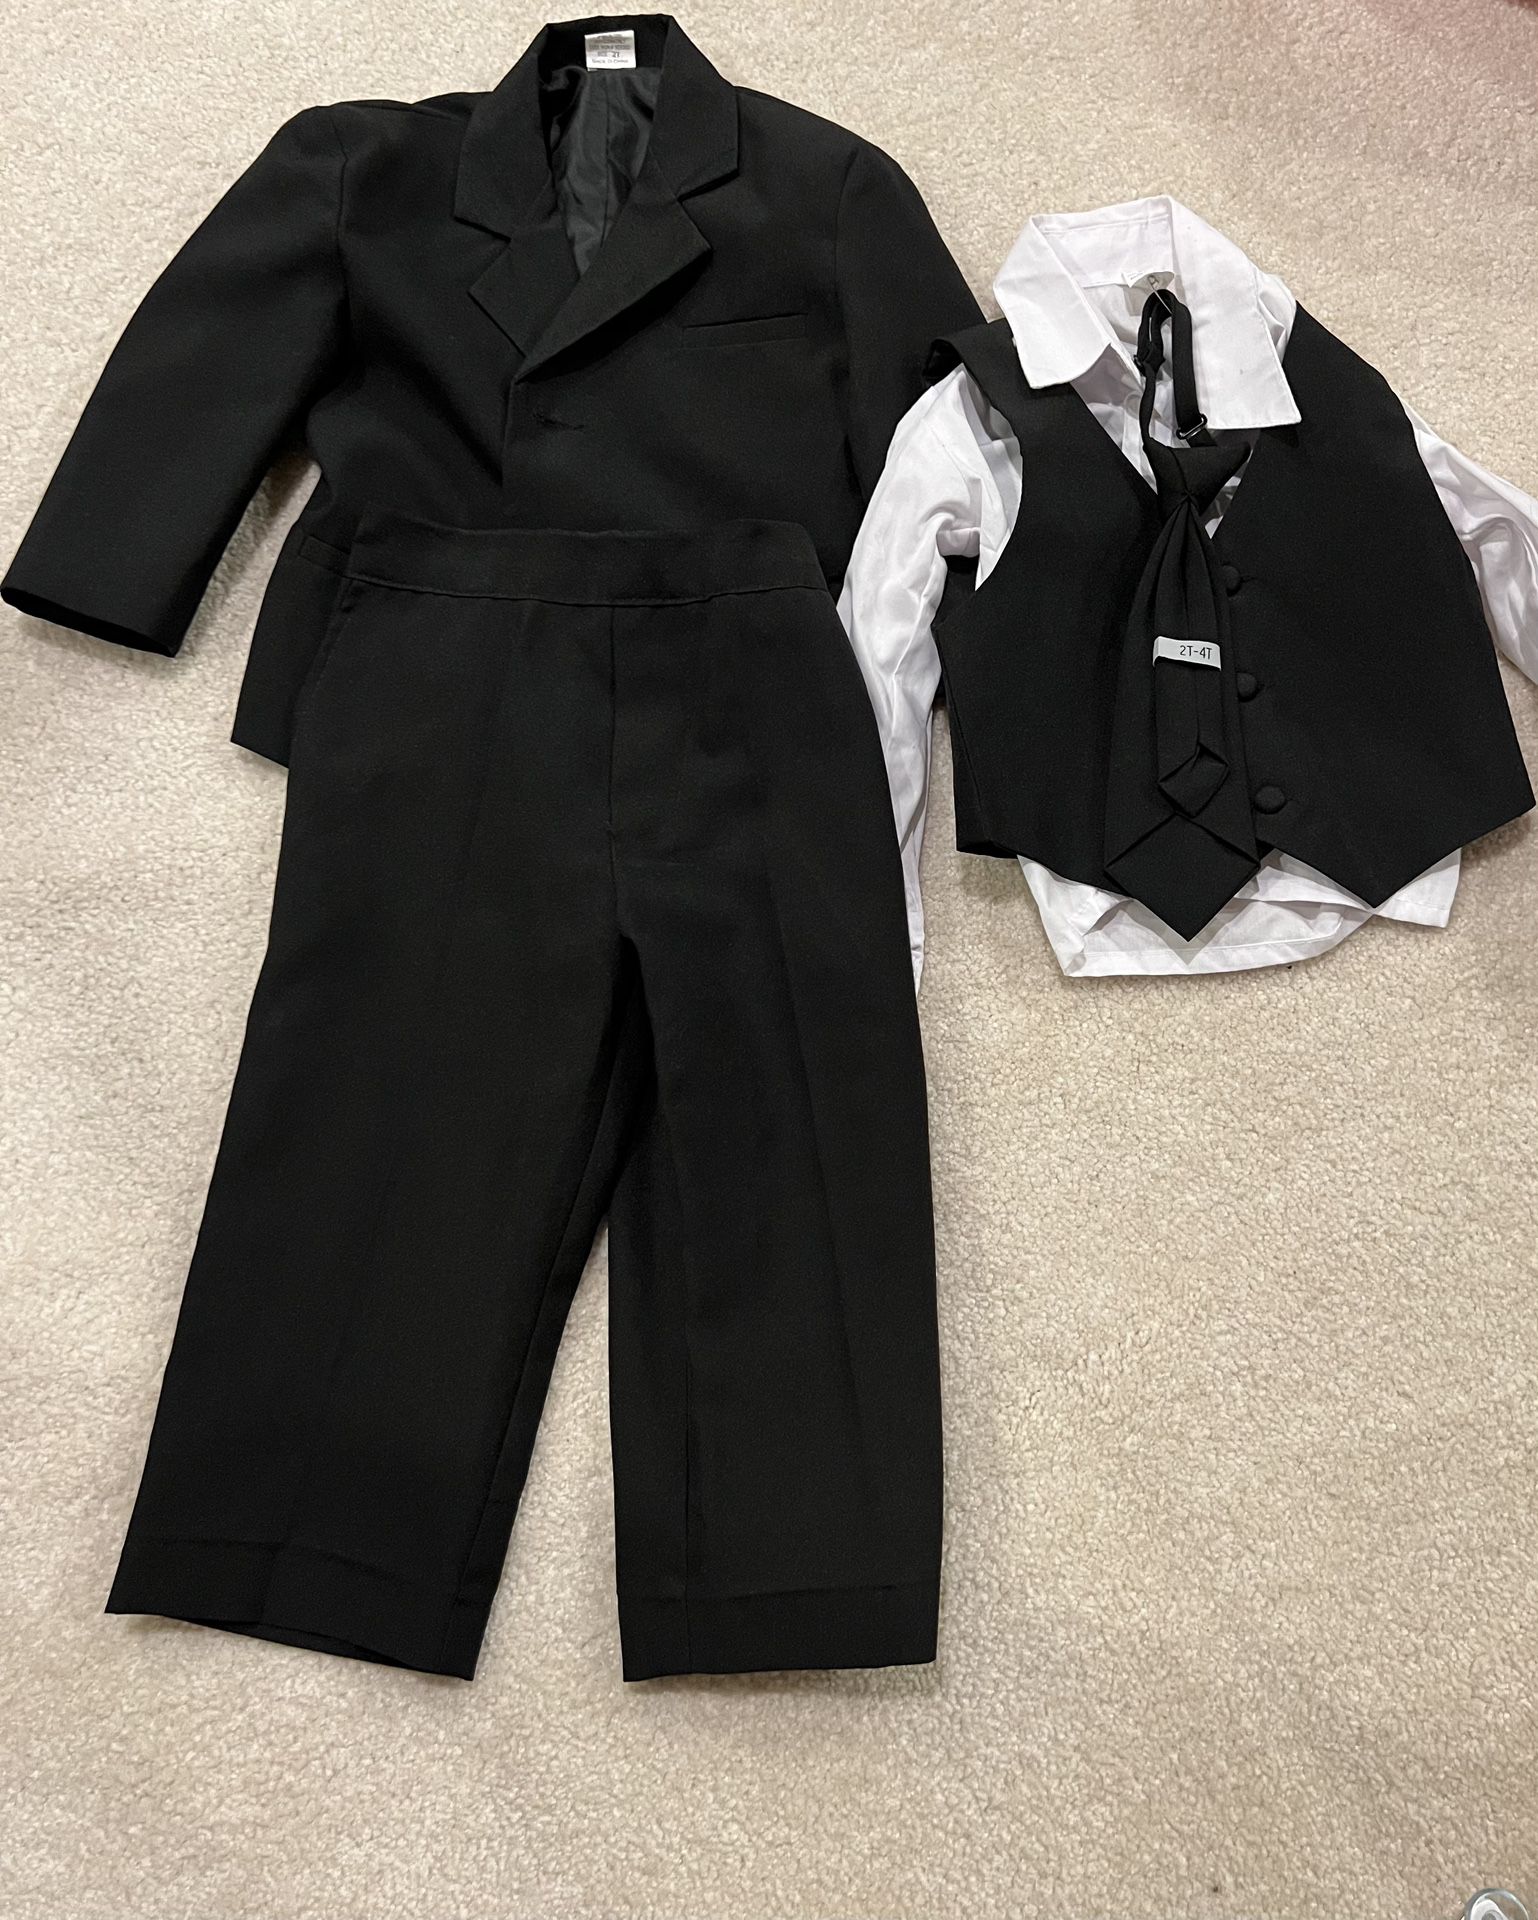 Kids Size 2 Black Four Piece Suit